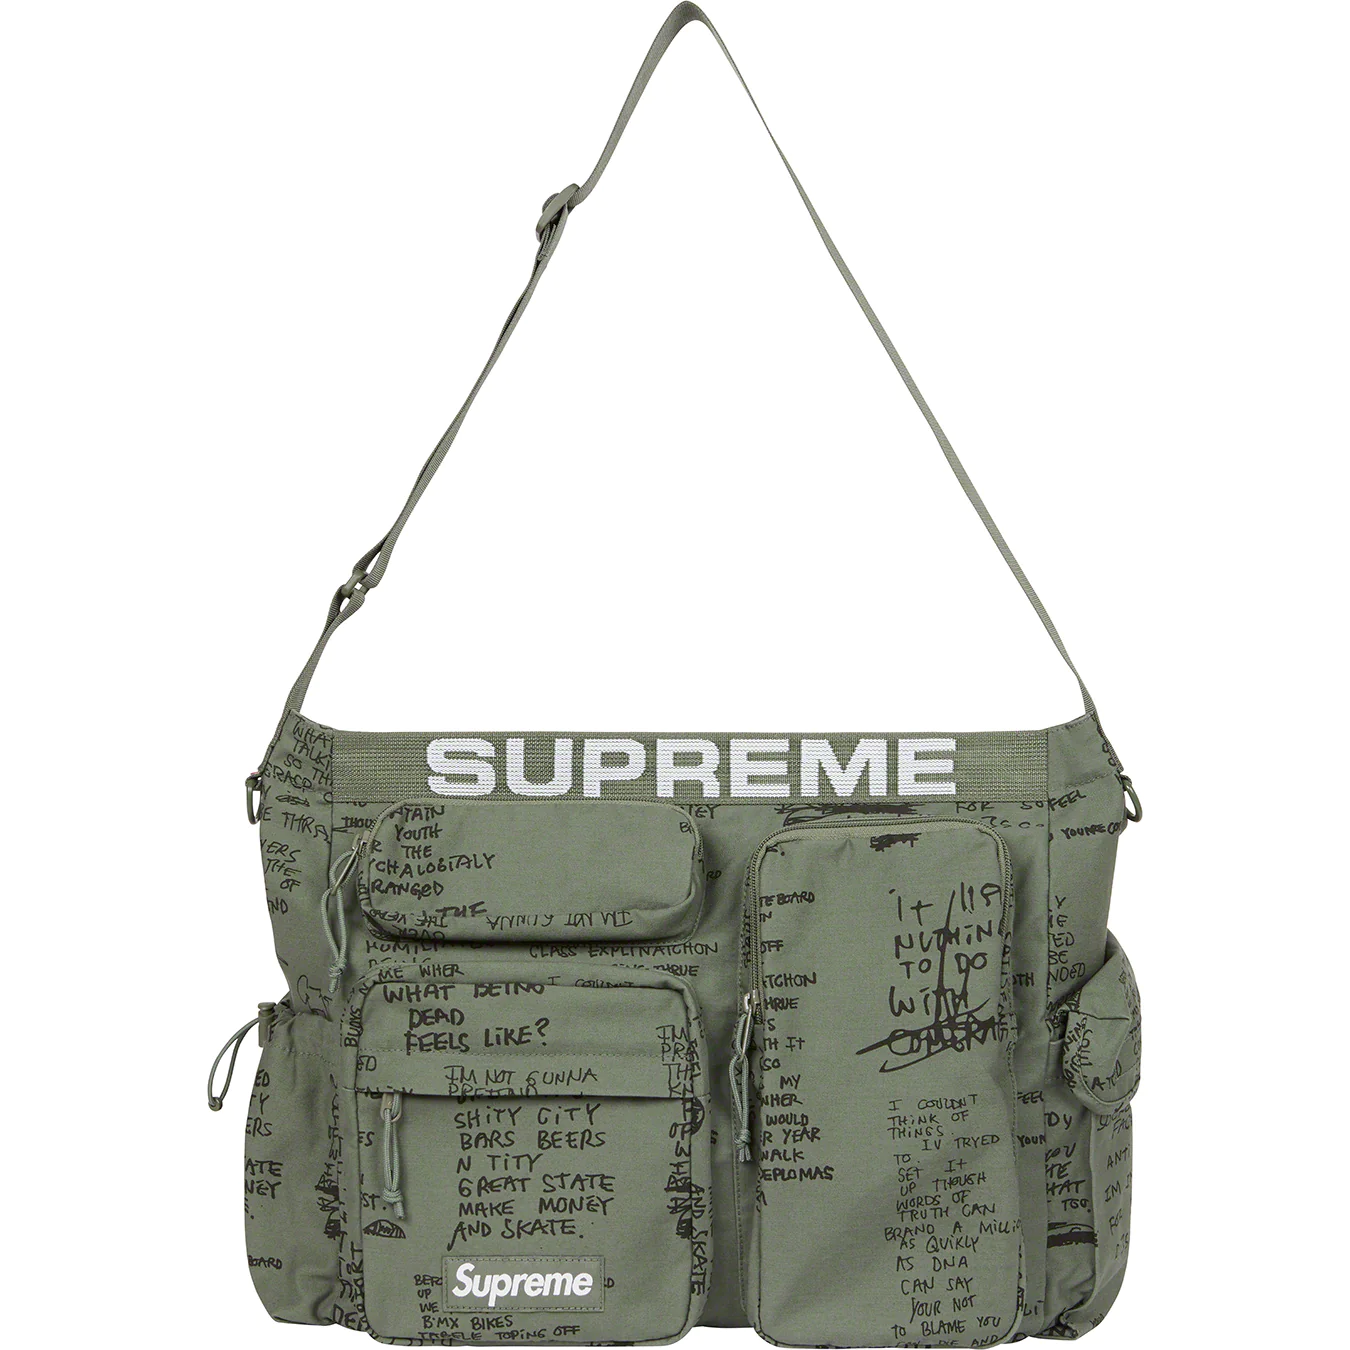 Supreme Field Messenger Bag